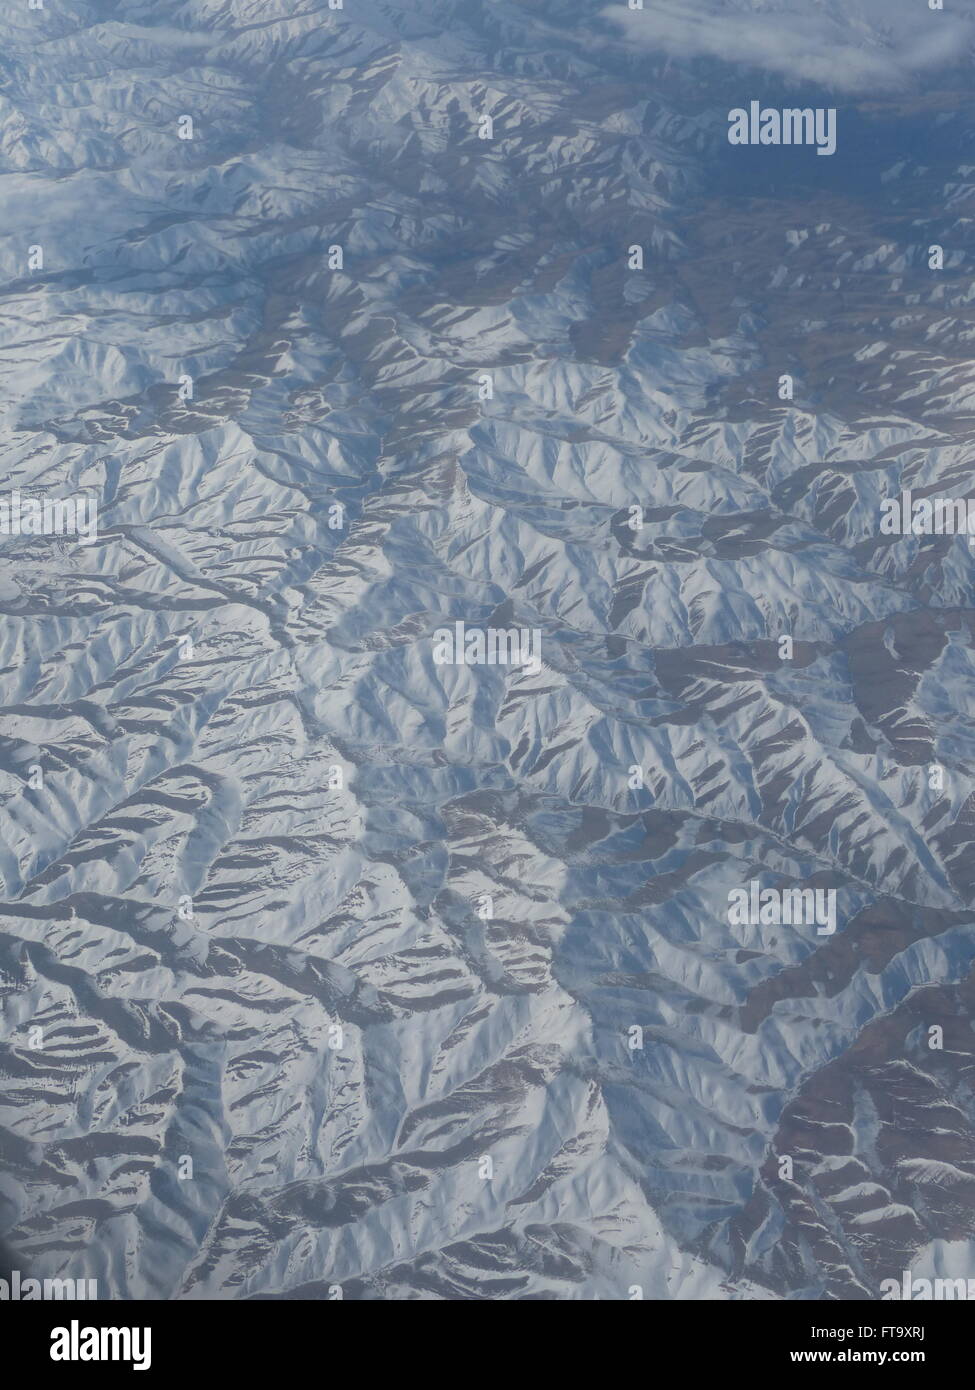 Cordillera de Zagros en Irán occidental, que se extienden por 1.500 Km. Foto de stock